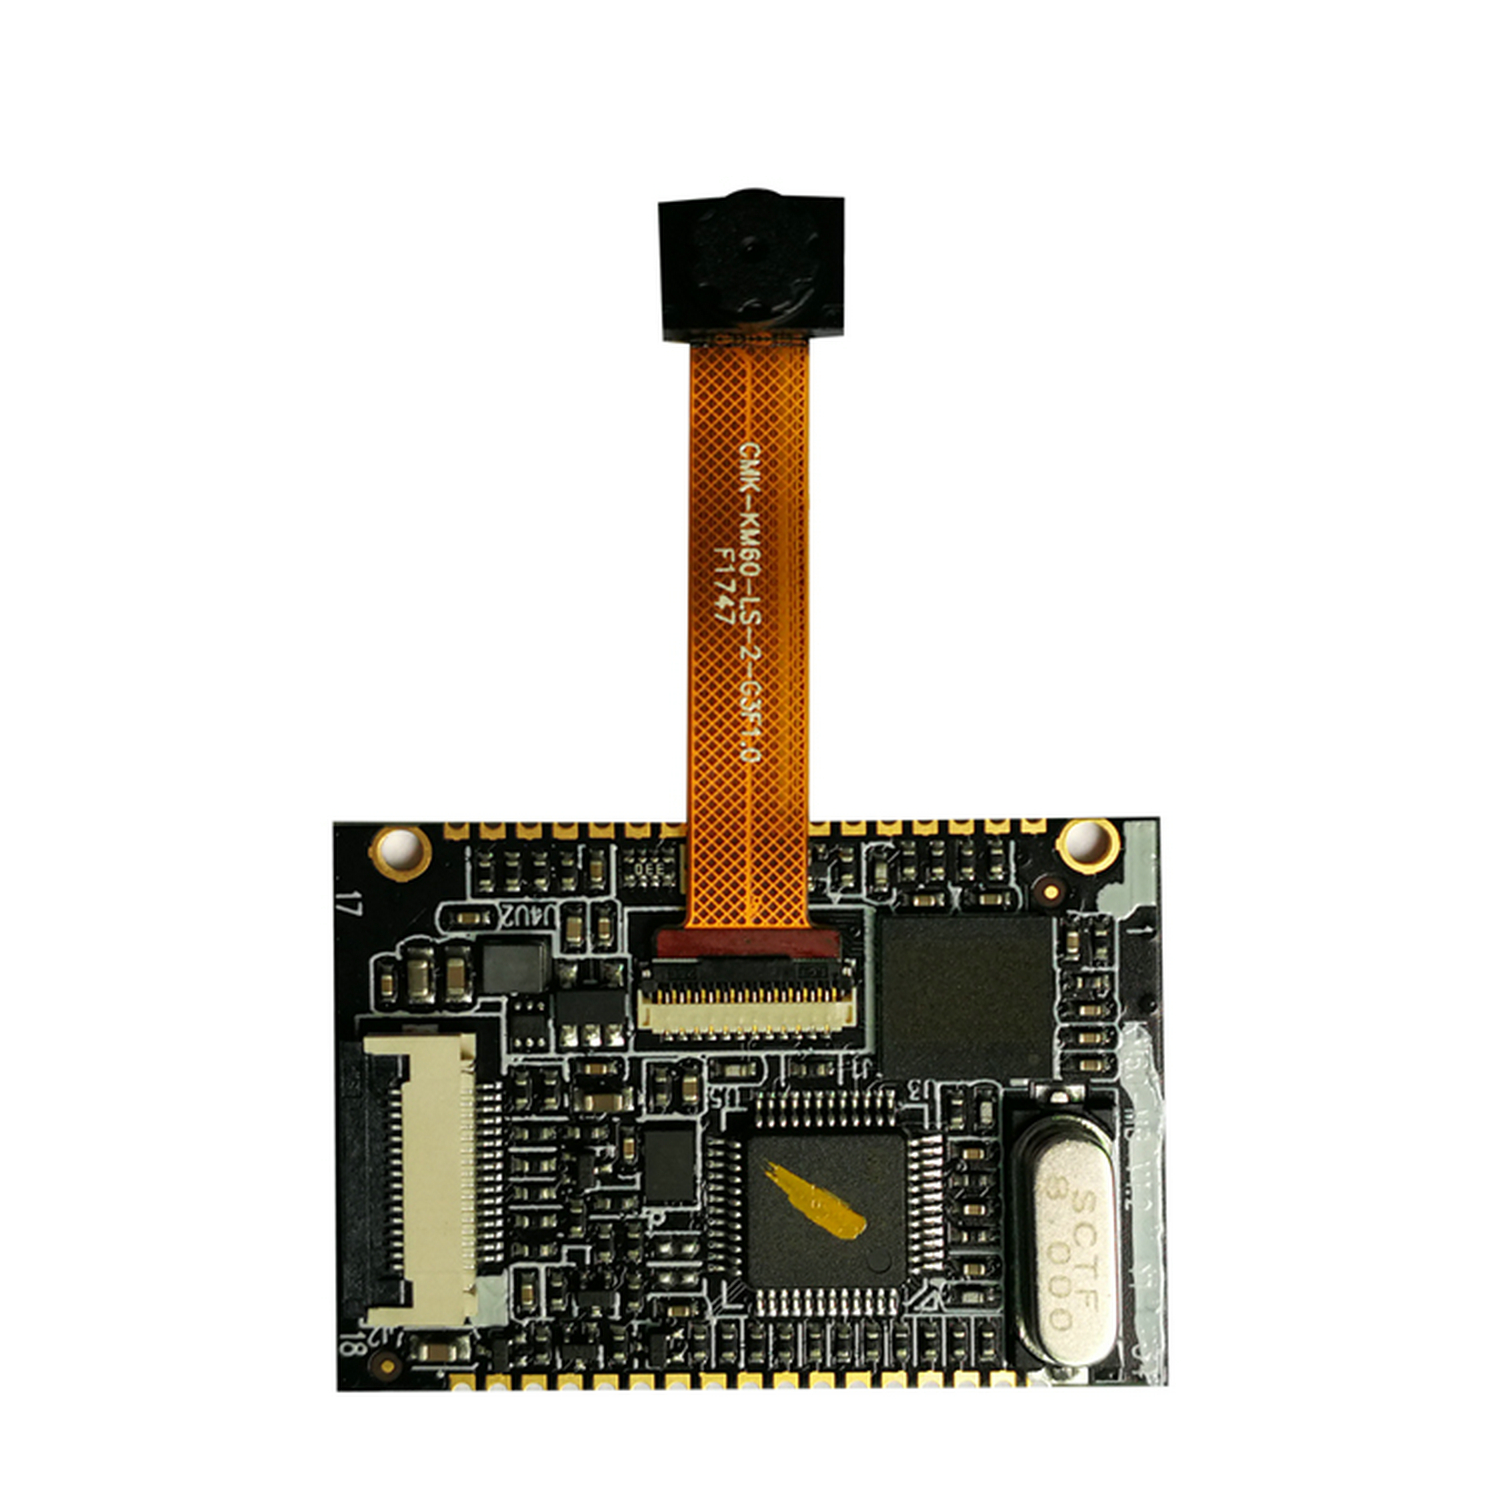 Módulo de escáner OEM de placa decodificadora bidimensional serie/USB HS-2001M